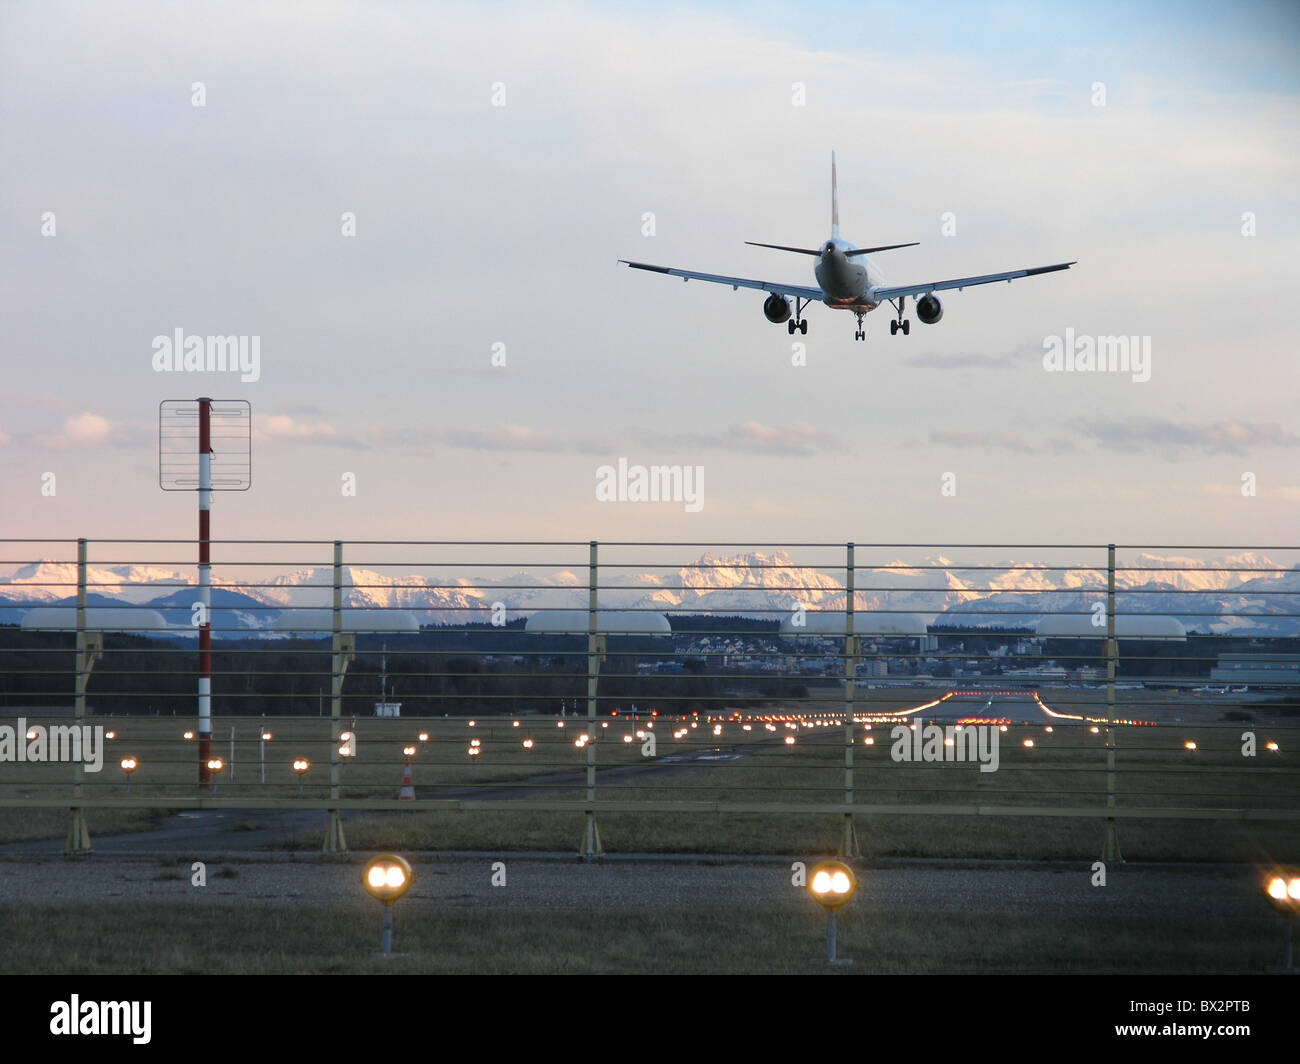 airplane jet jet airplane landing runway lights Befeuerung Zurich airport Switzerland Europe Alps dusk twi Stock Photo